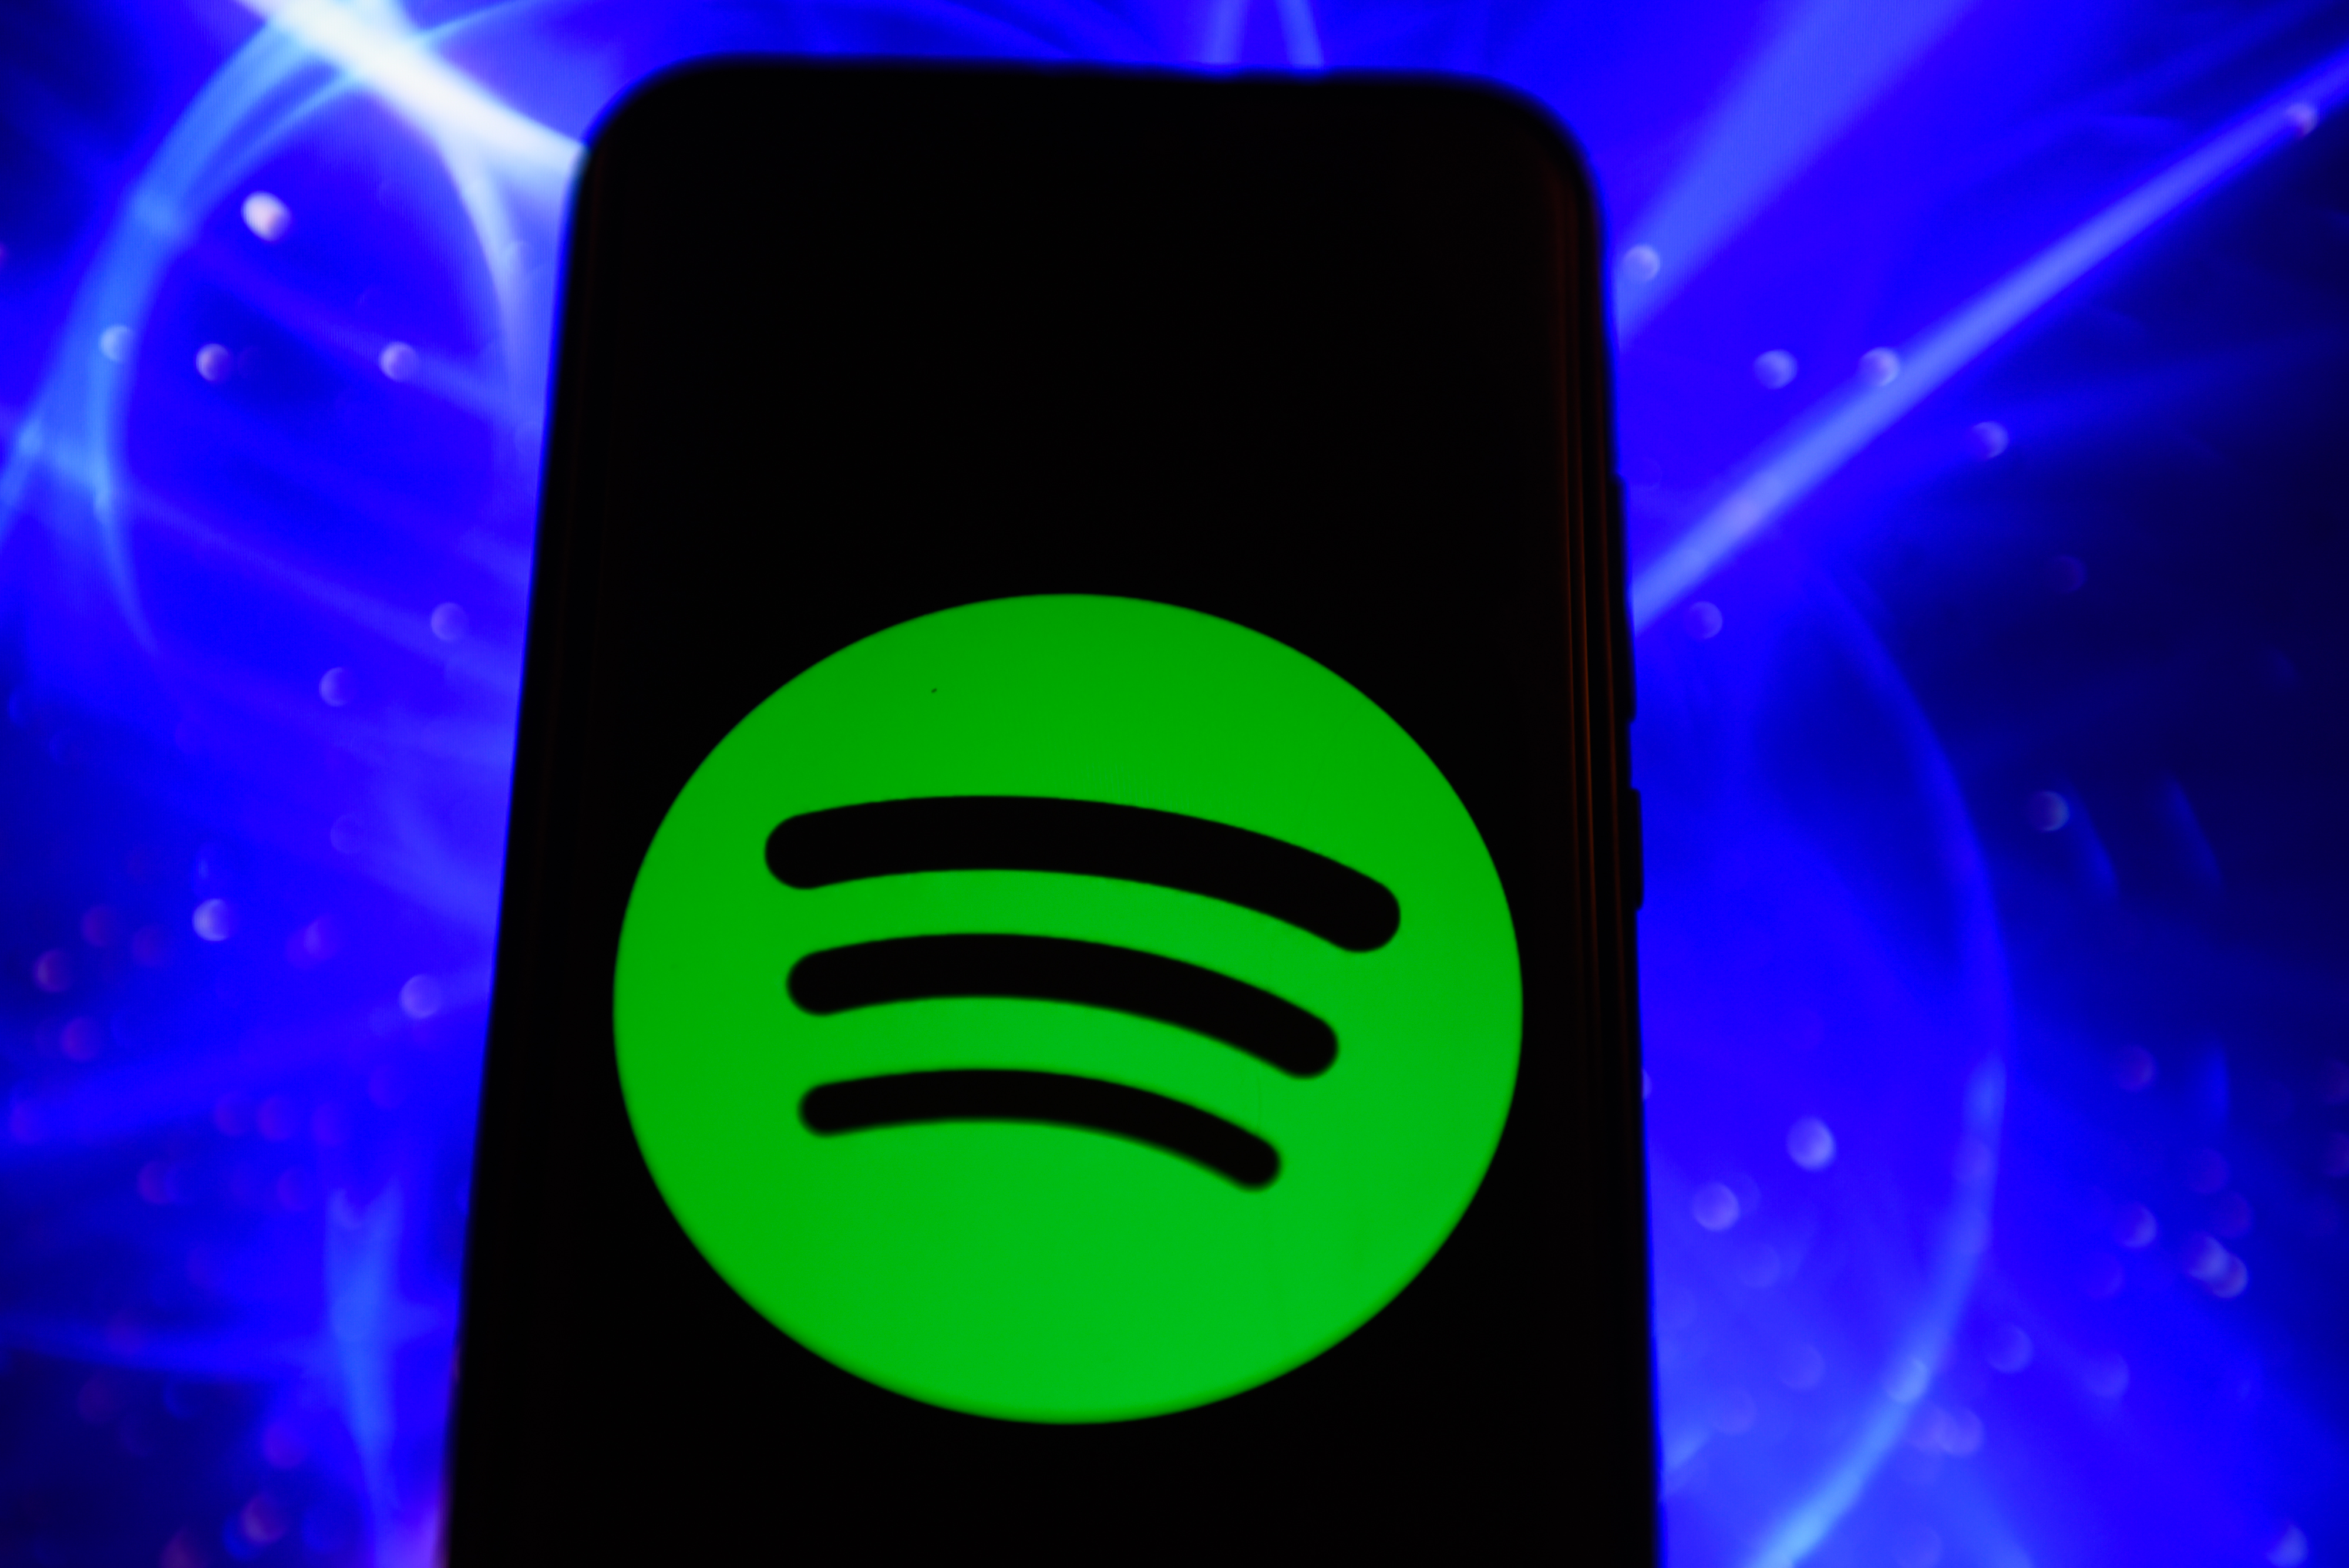 Weltweit zählt Spotify 96 Millionen zahlende Abonnenten - Tendenz steigend.